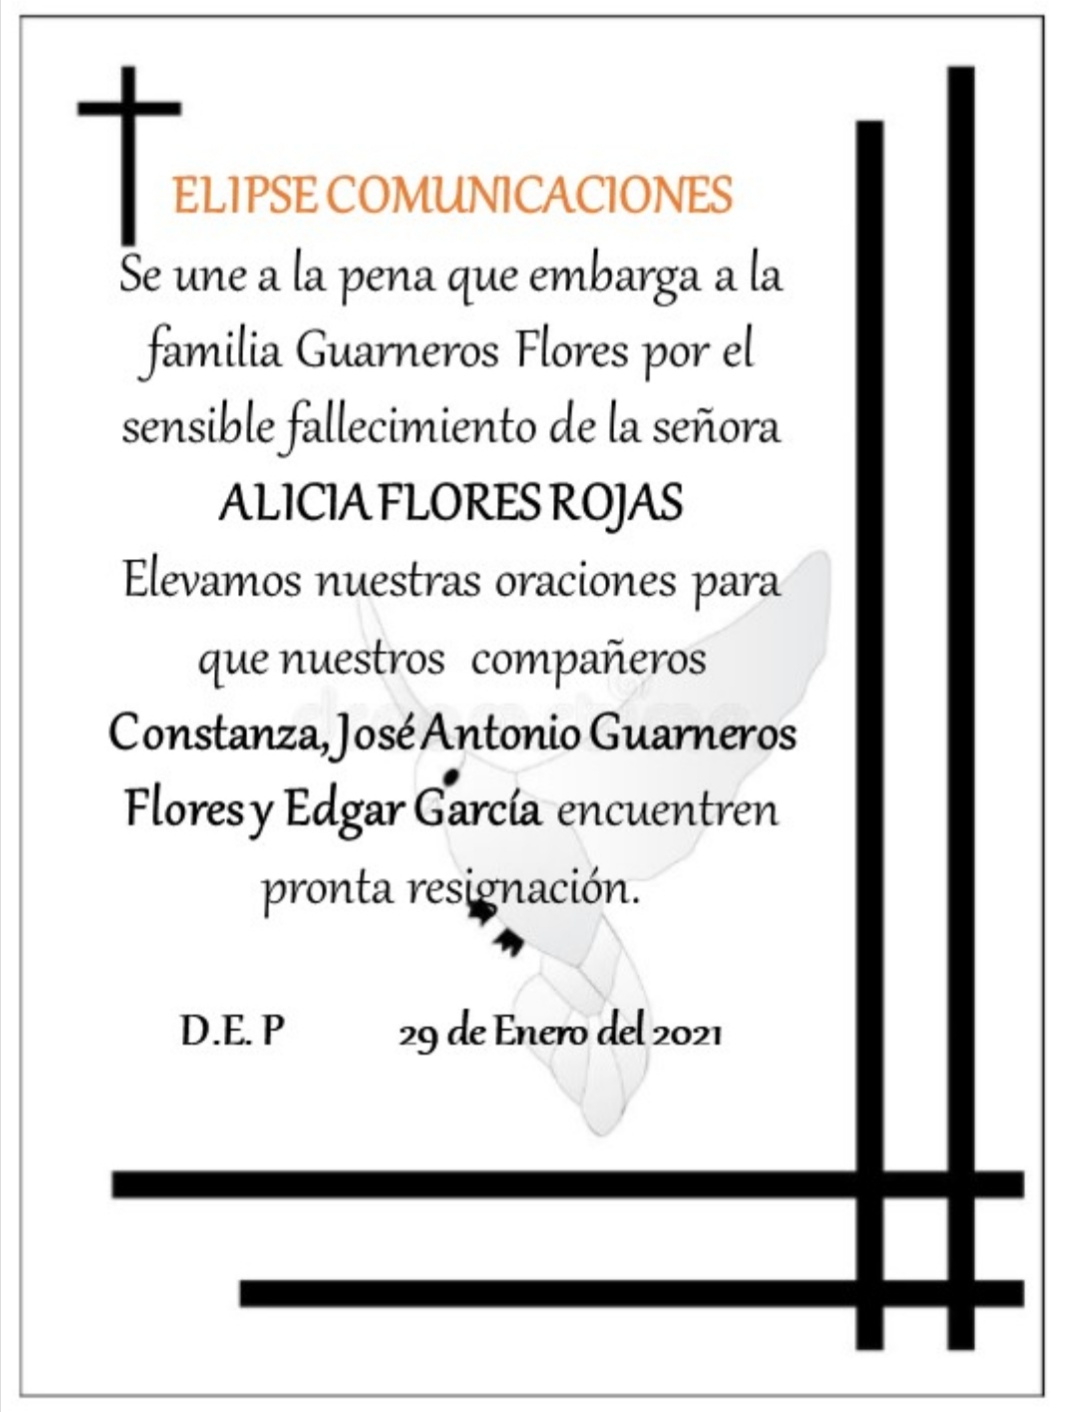 ELIPSE COMUNICACIONES Se une a la pena que embarga a la familia Guarneros Flores por el sencible fallecimiento de la señora ALICIA FLORES ROJAS